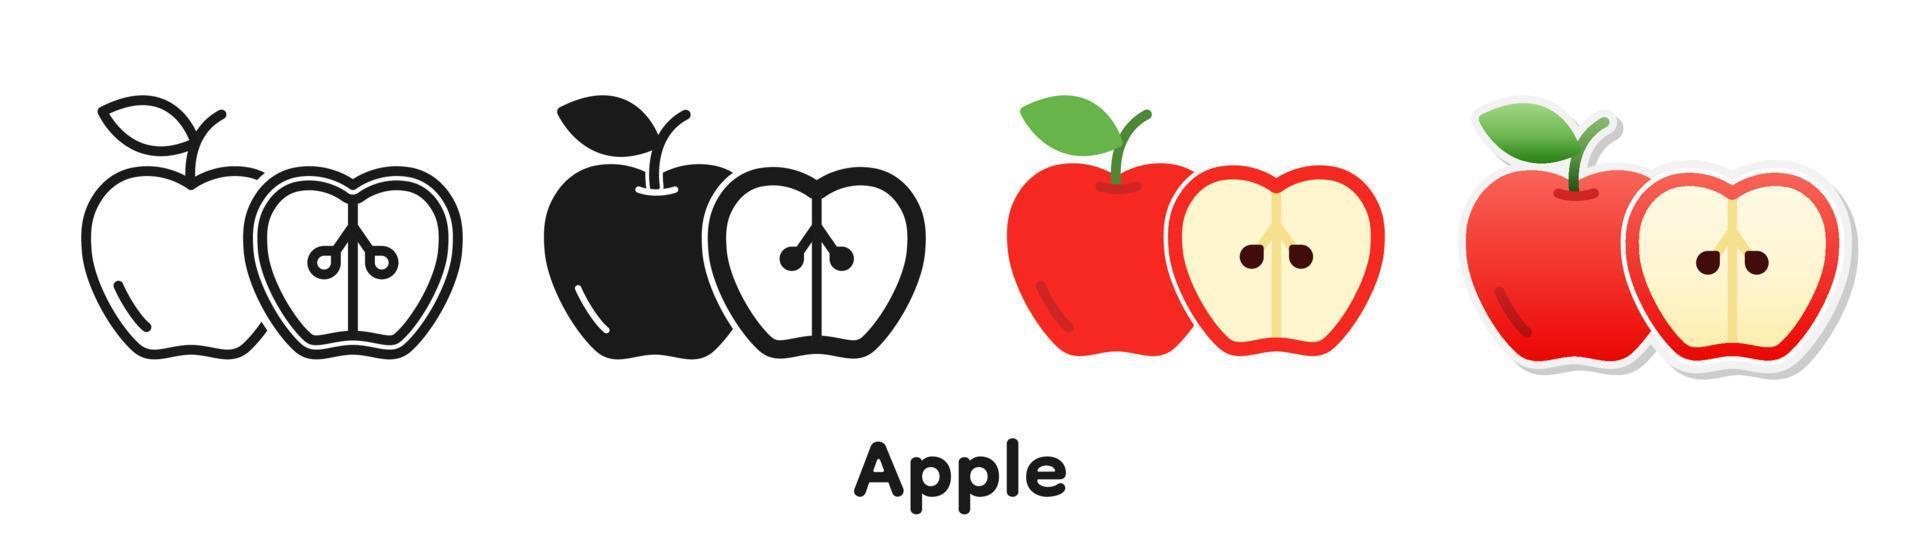 conjunto de iconos vectoriales de manzana. vector